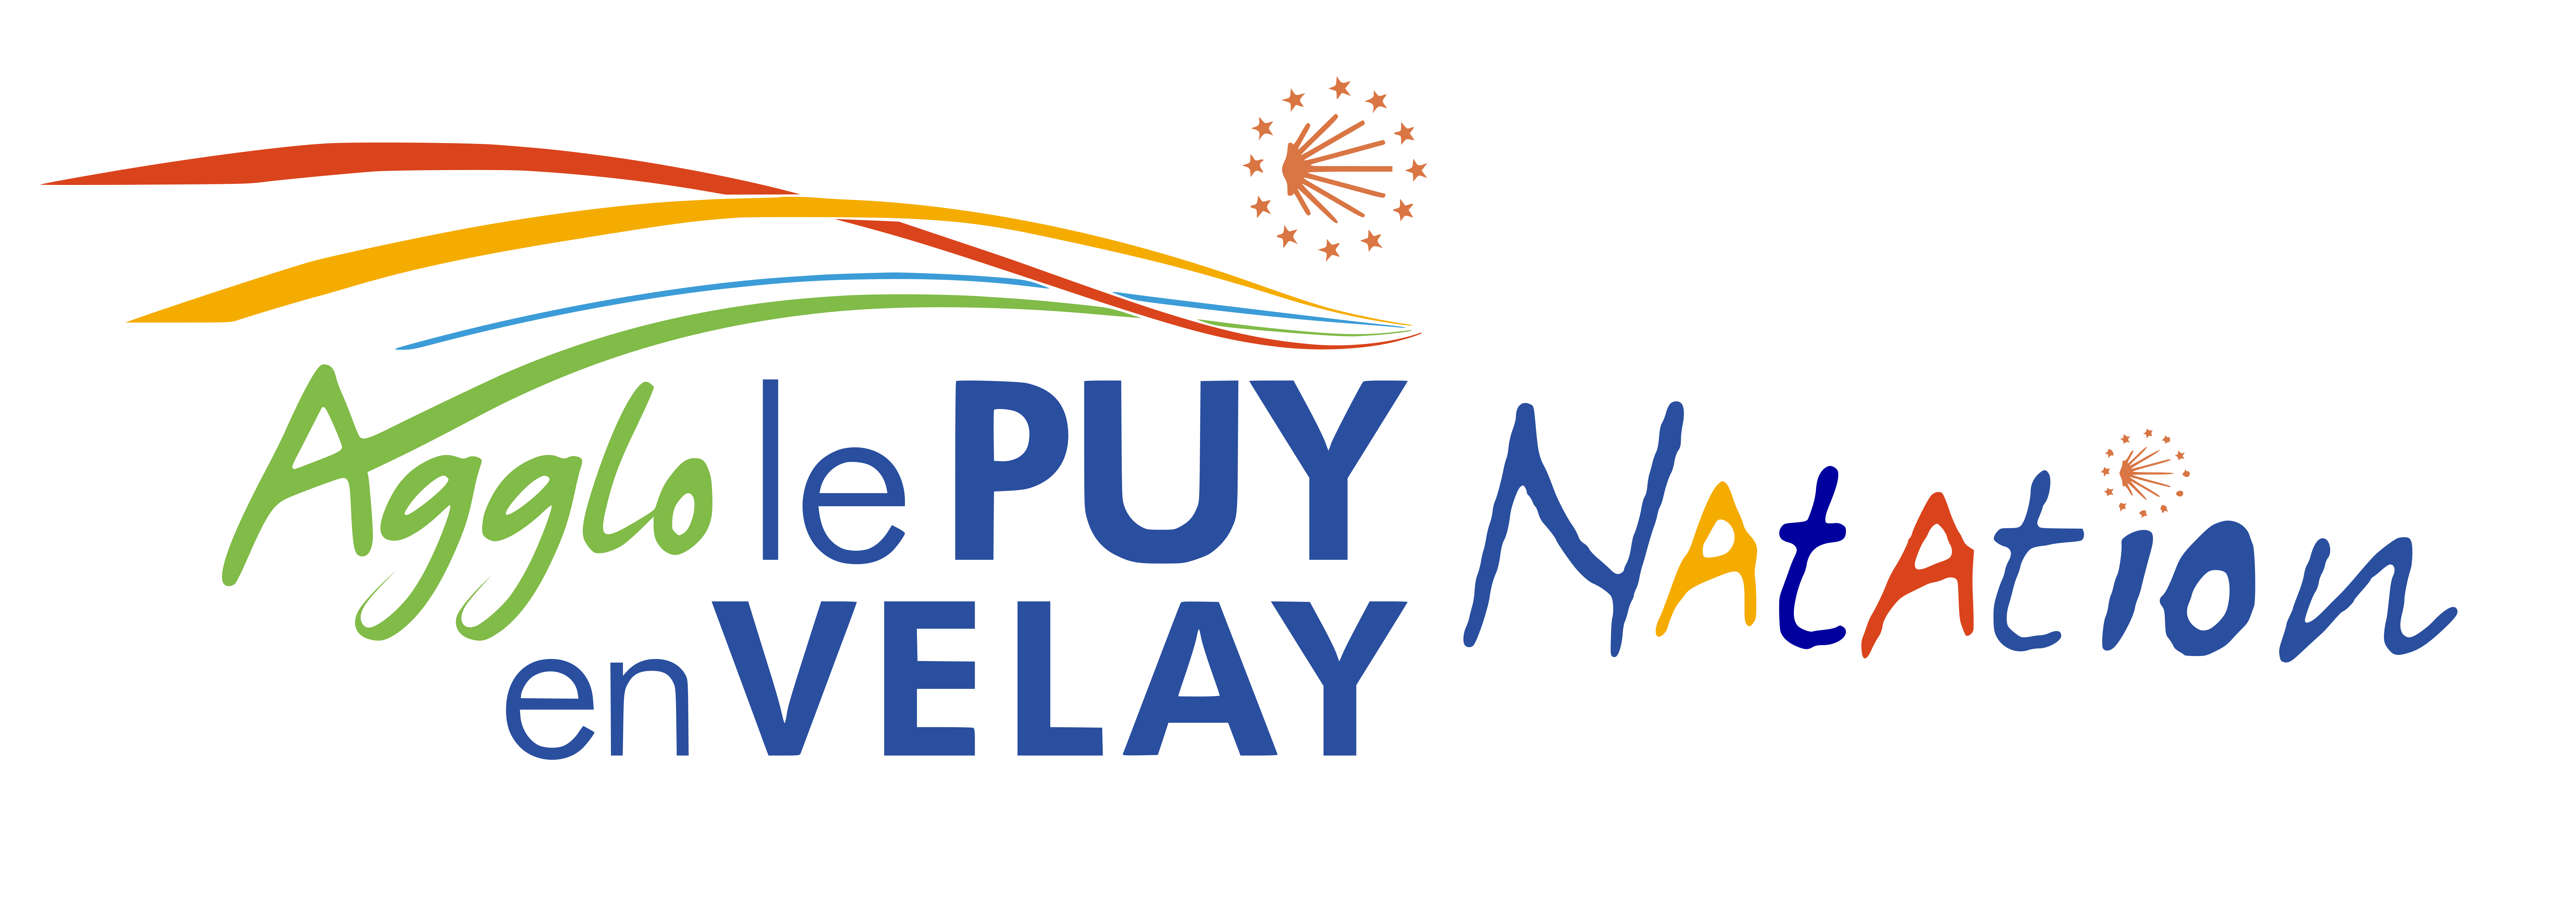 Agglo Le Puy-en-Velay Natation | Site Officiel